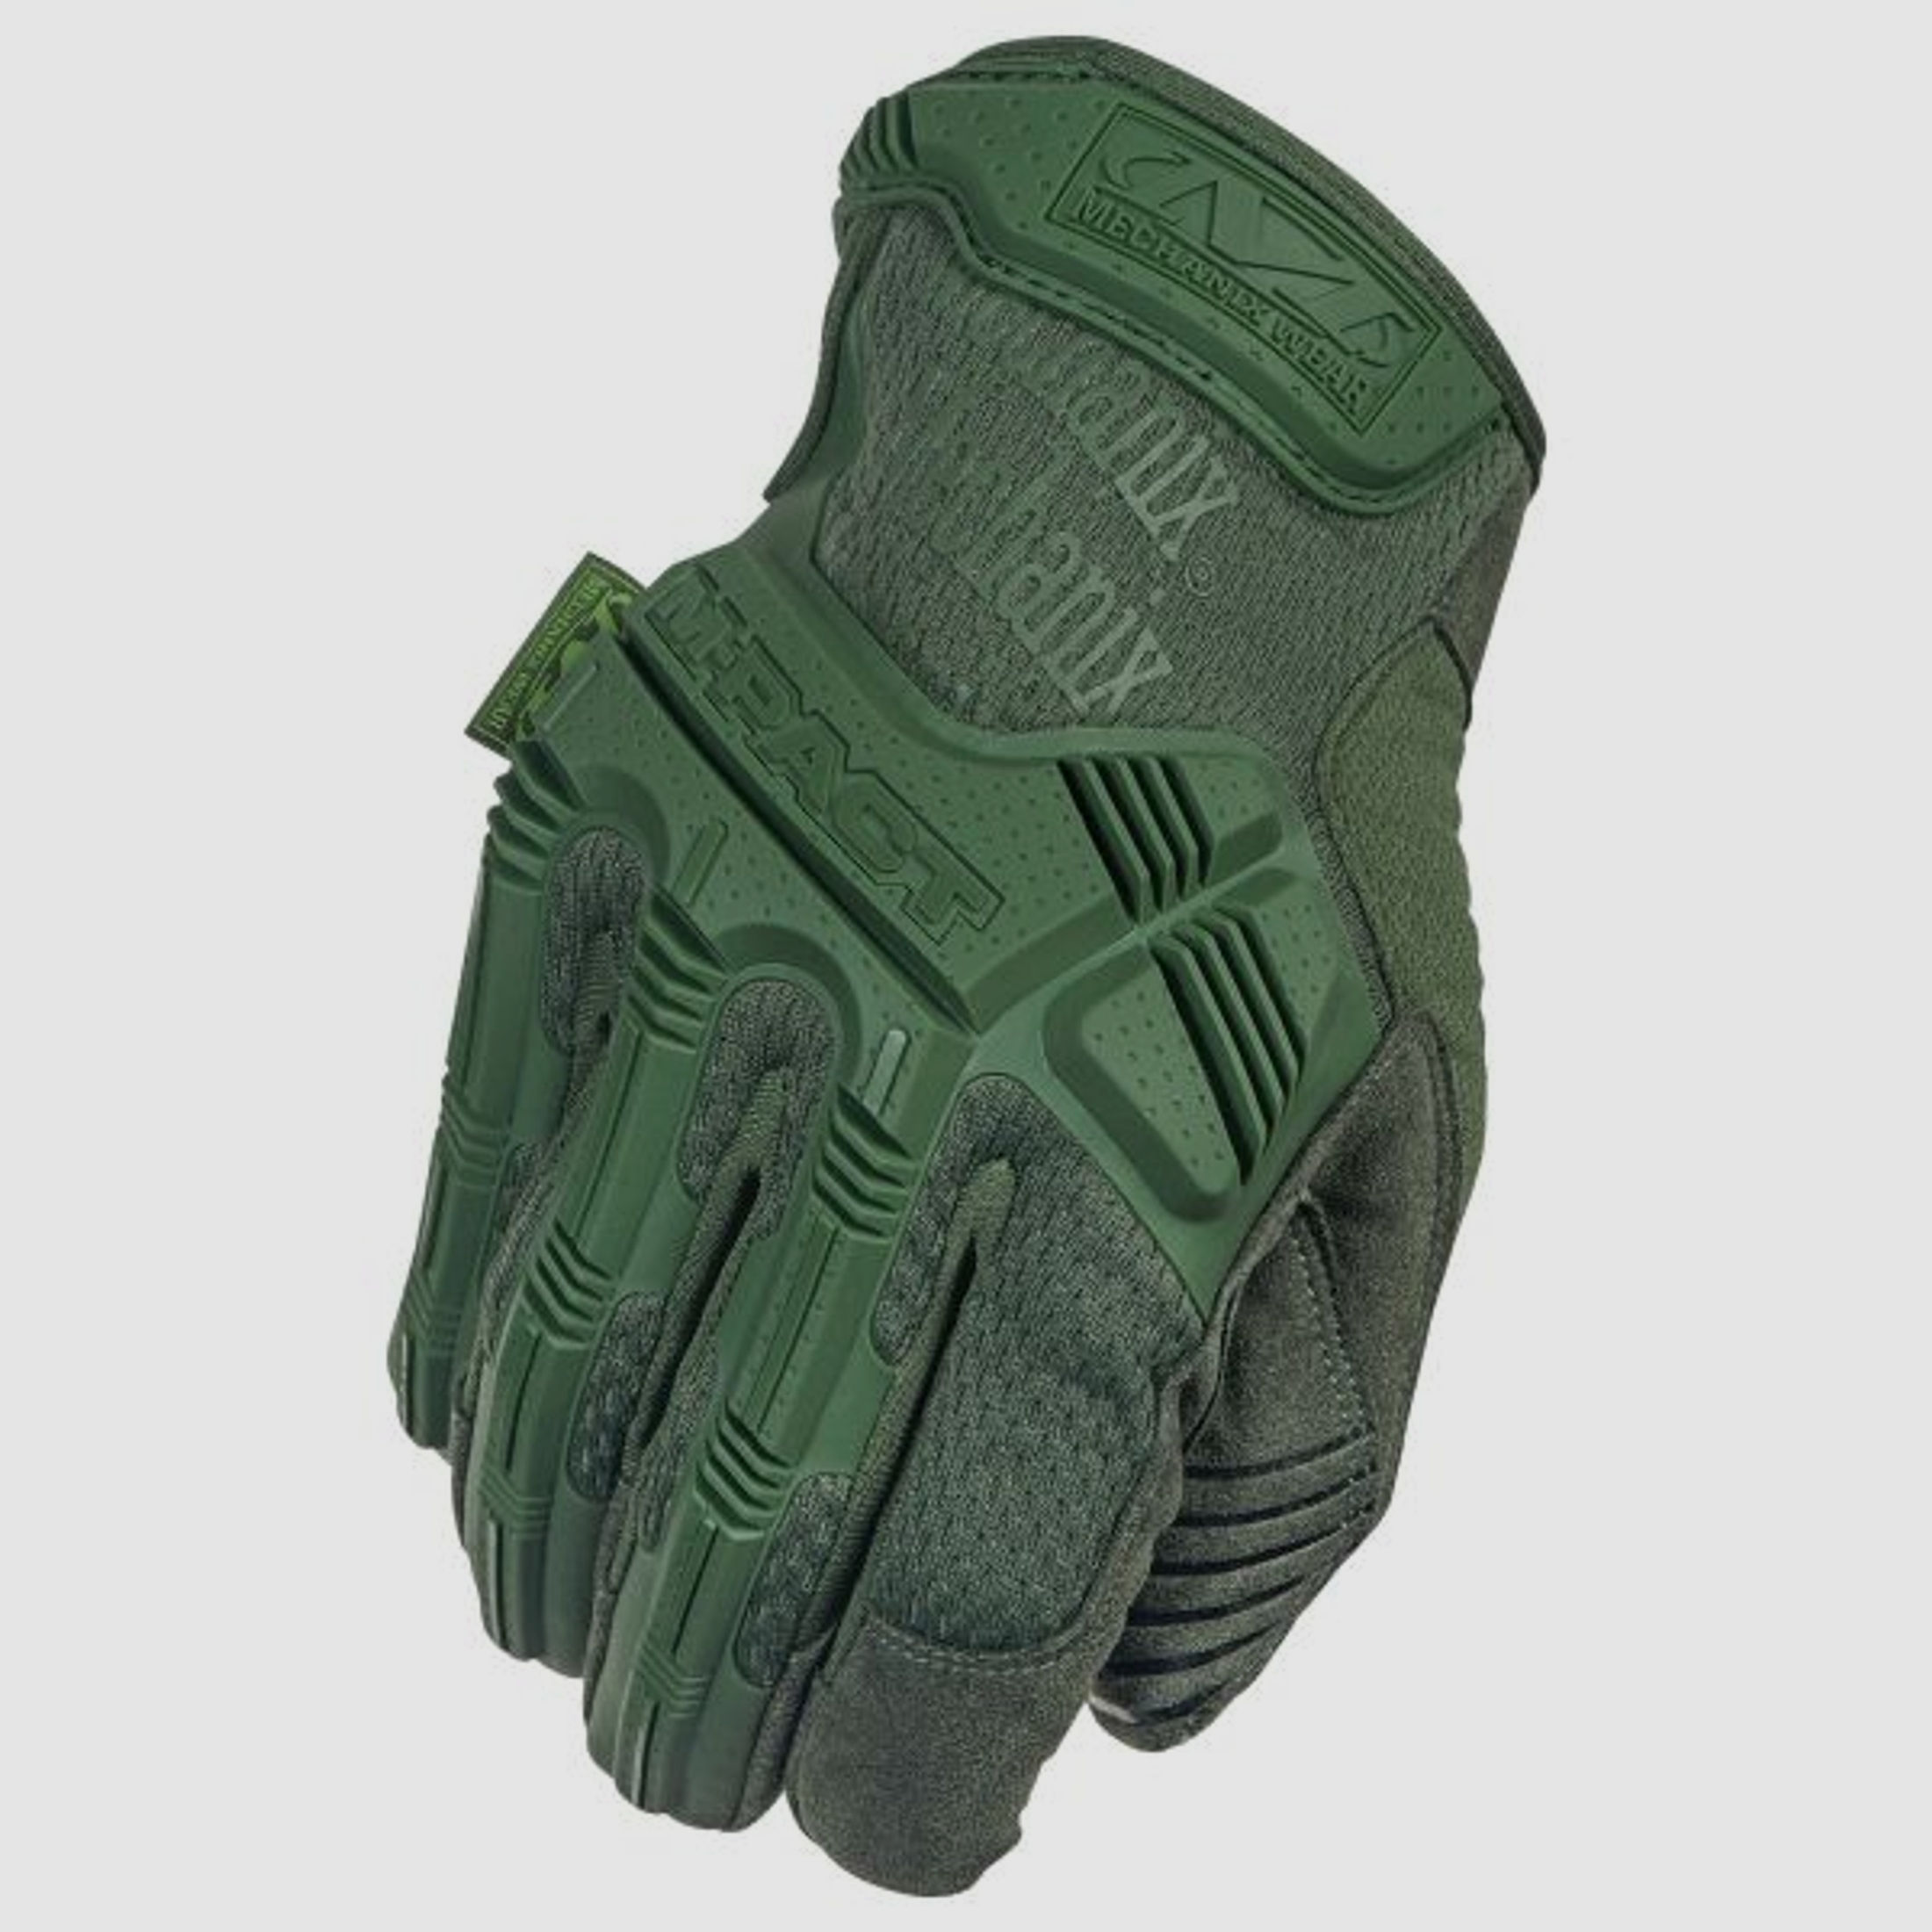 Mechanix Wear Mechanix Wear Handschuhe M-Pact OD Green